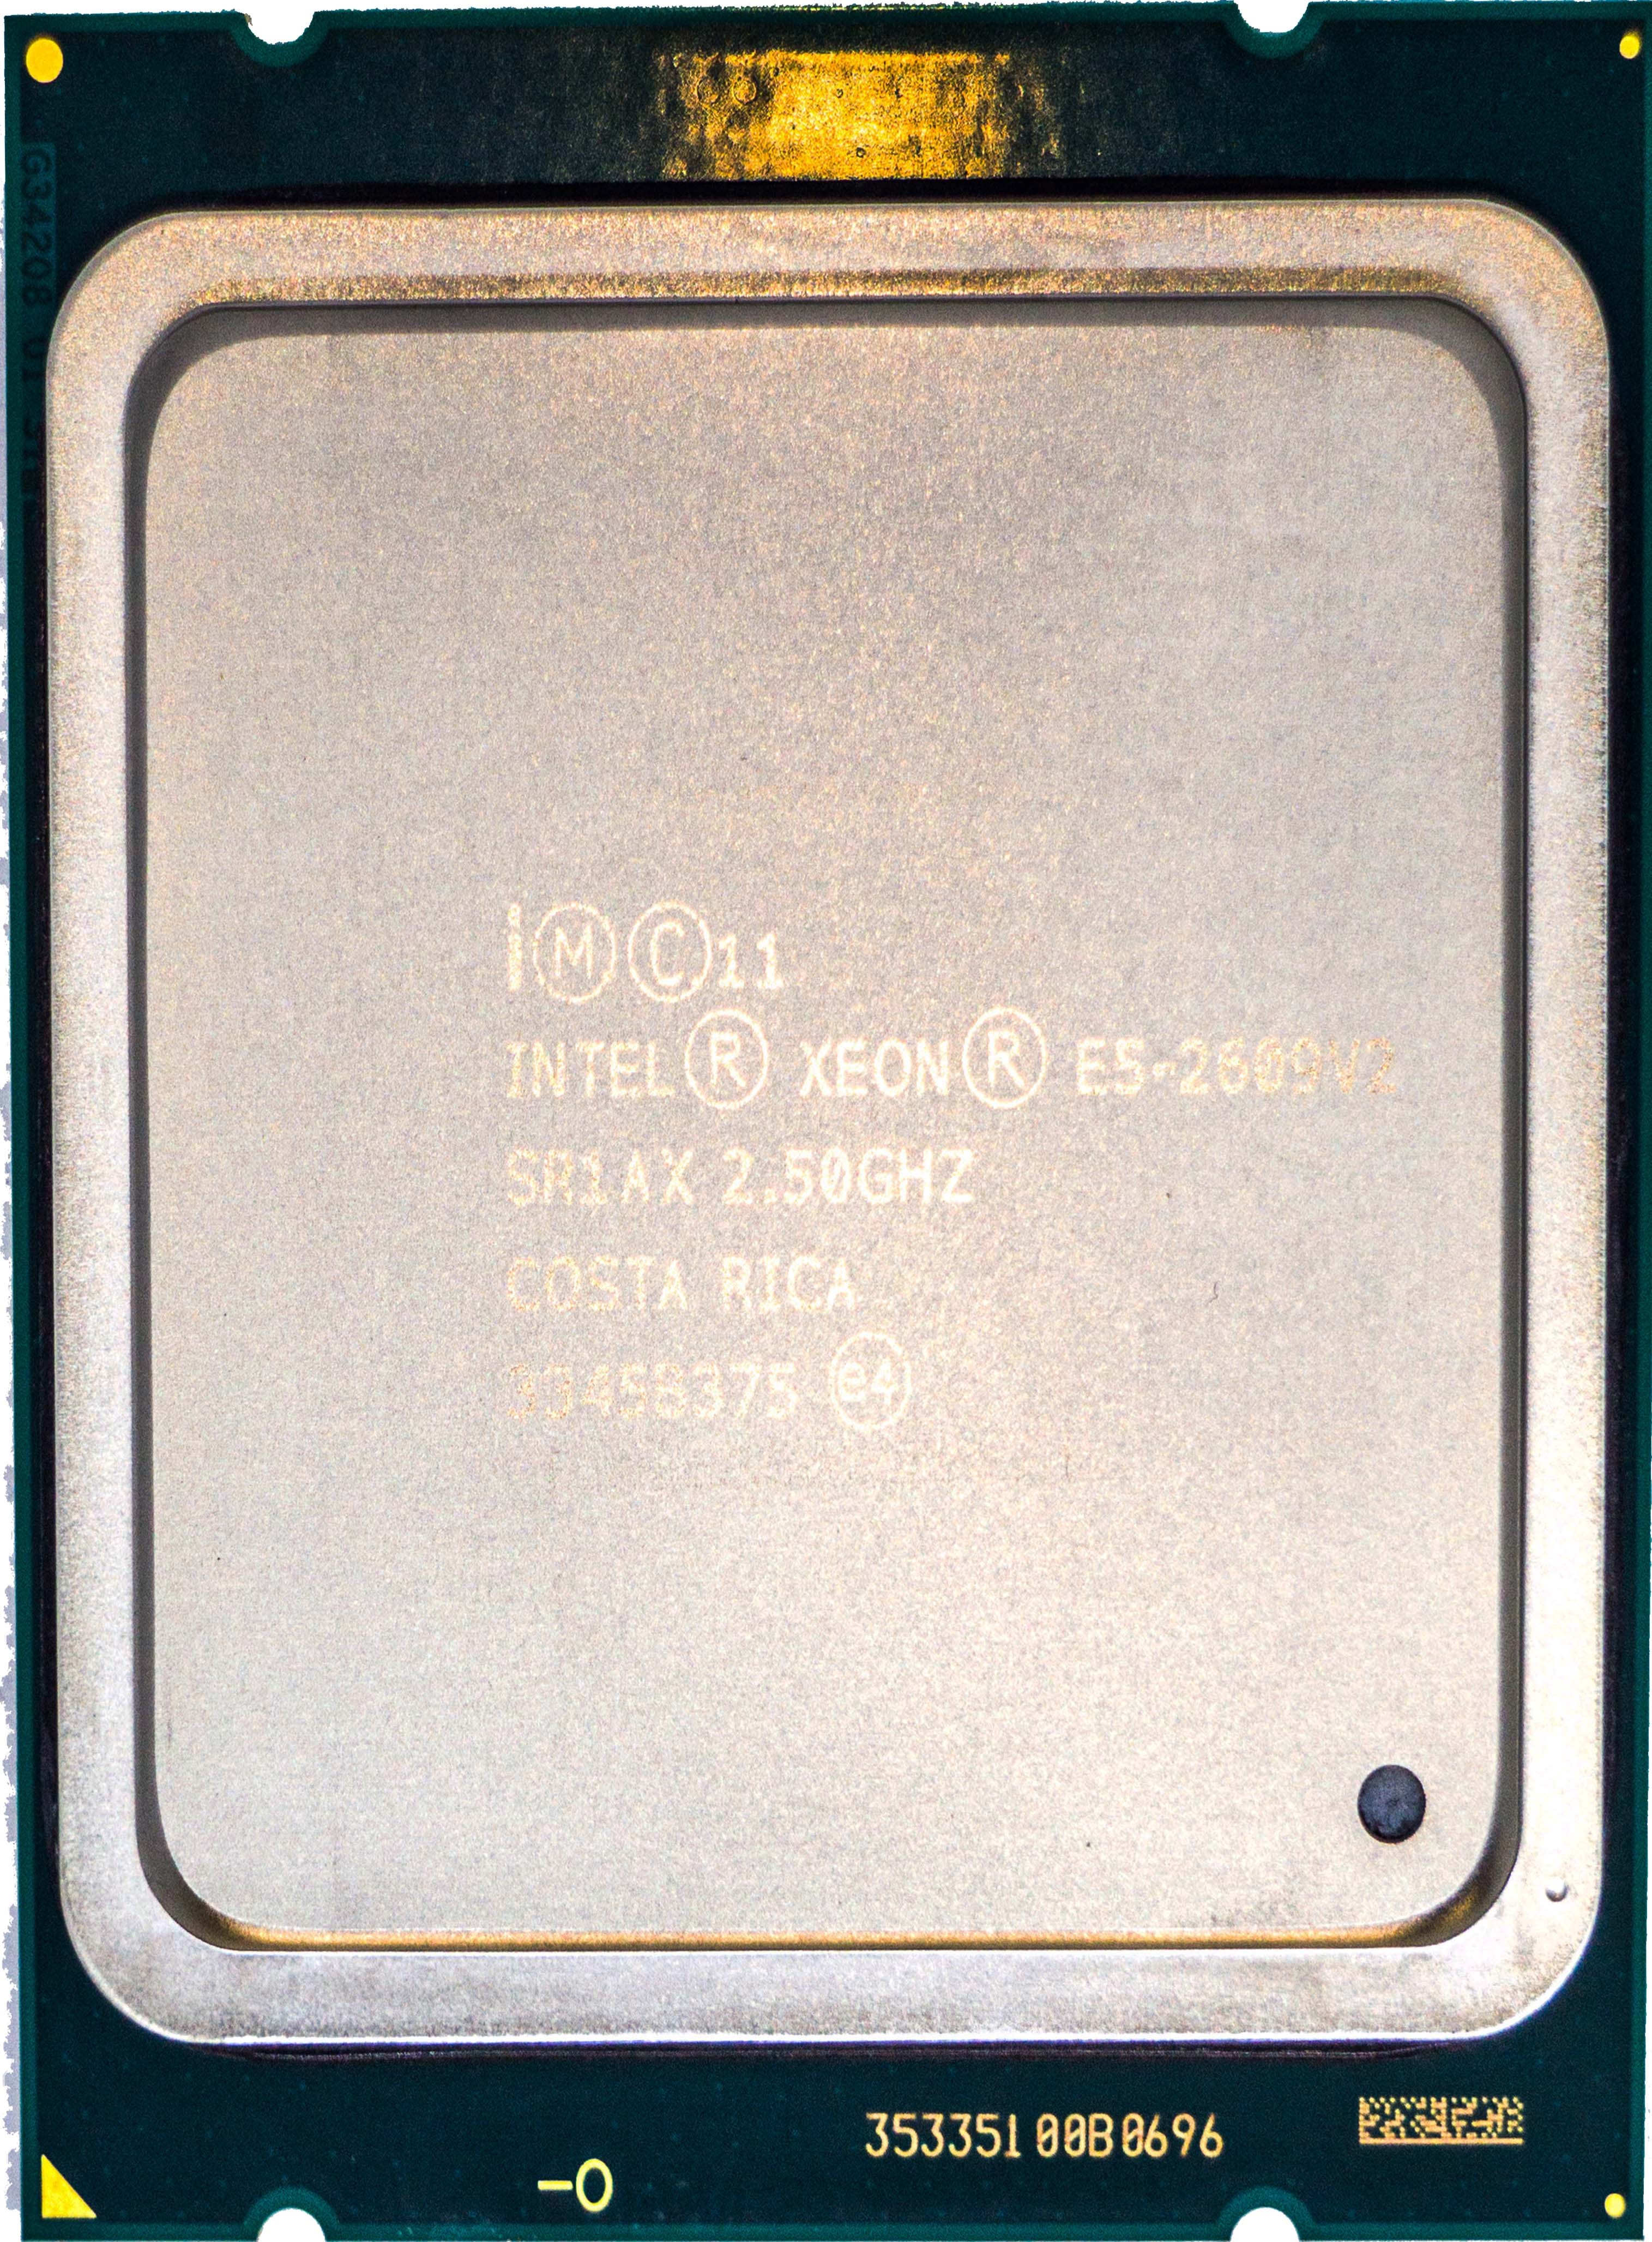 Intel Xeon E5-2609 V2 (SR1AX) 2.50GHz 4-Core LGA2011 80W 10MB CPU CPU0000358